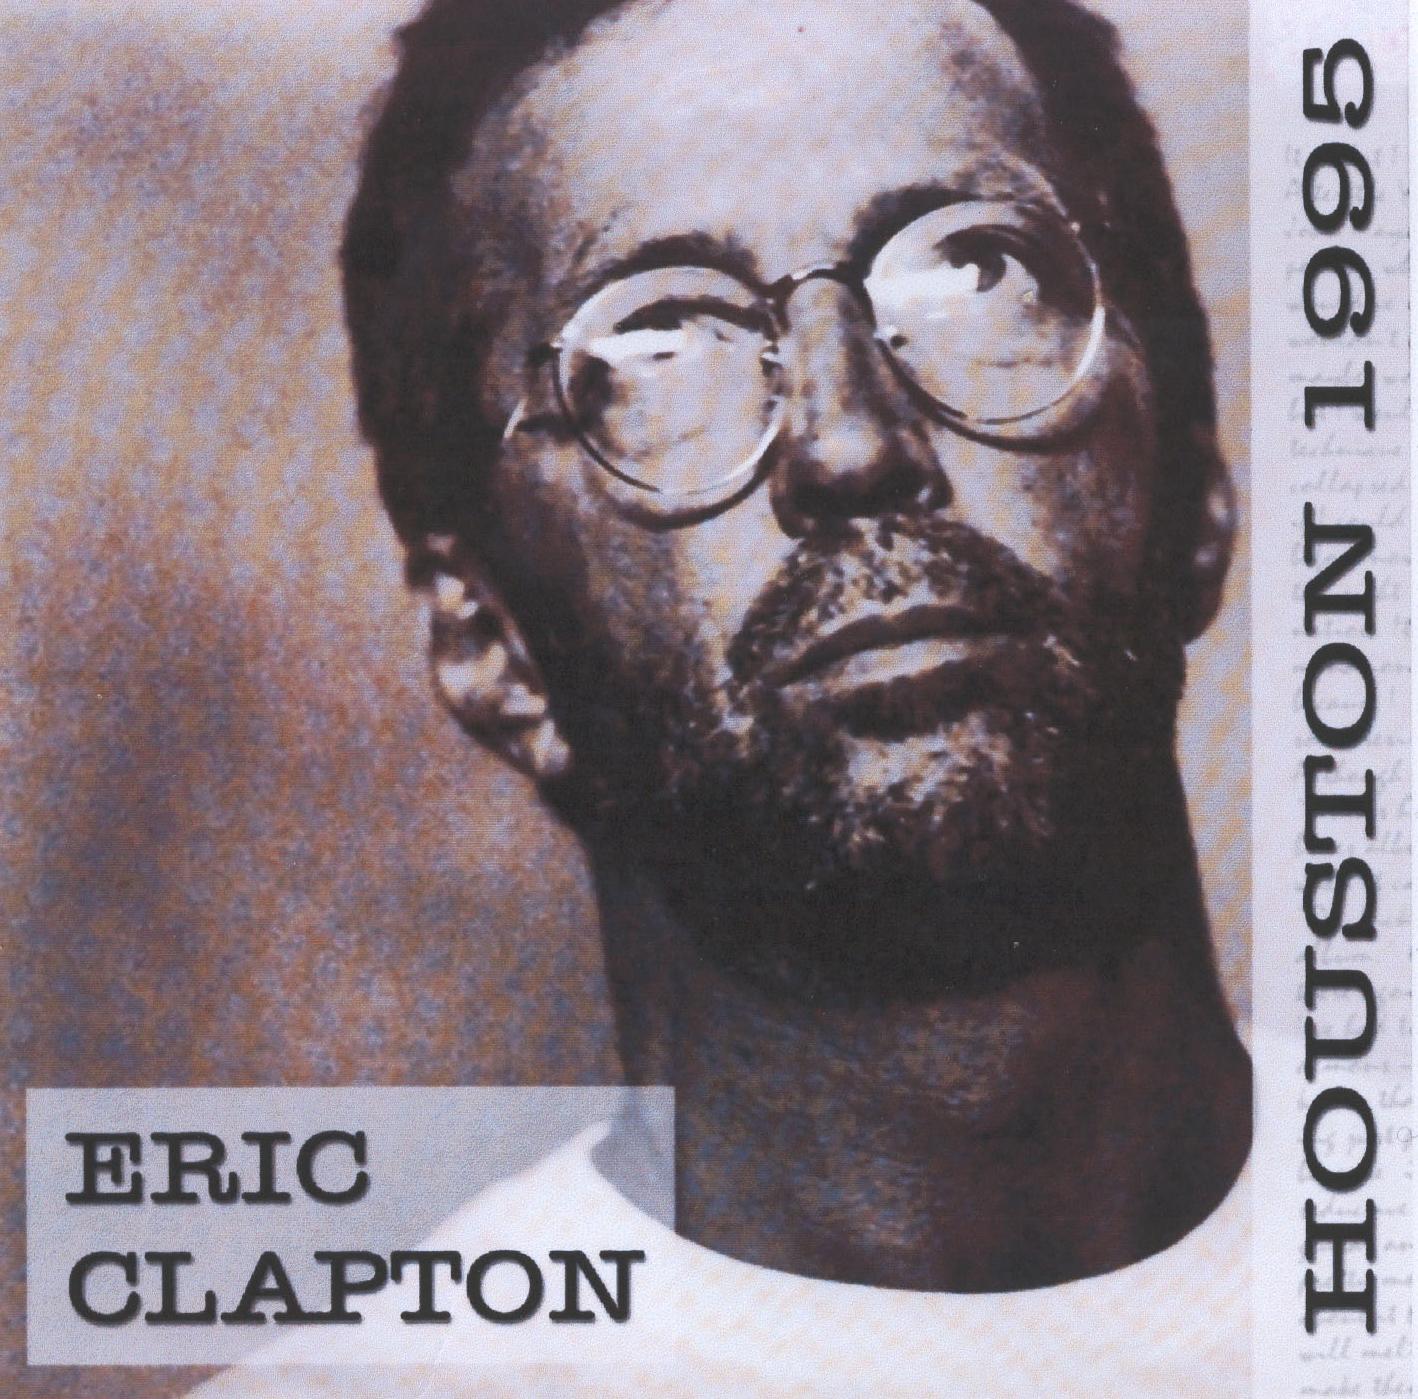 Eric Clapton - Houston 19951418 x 1399